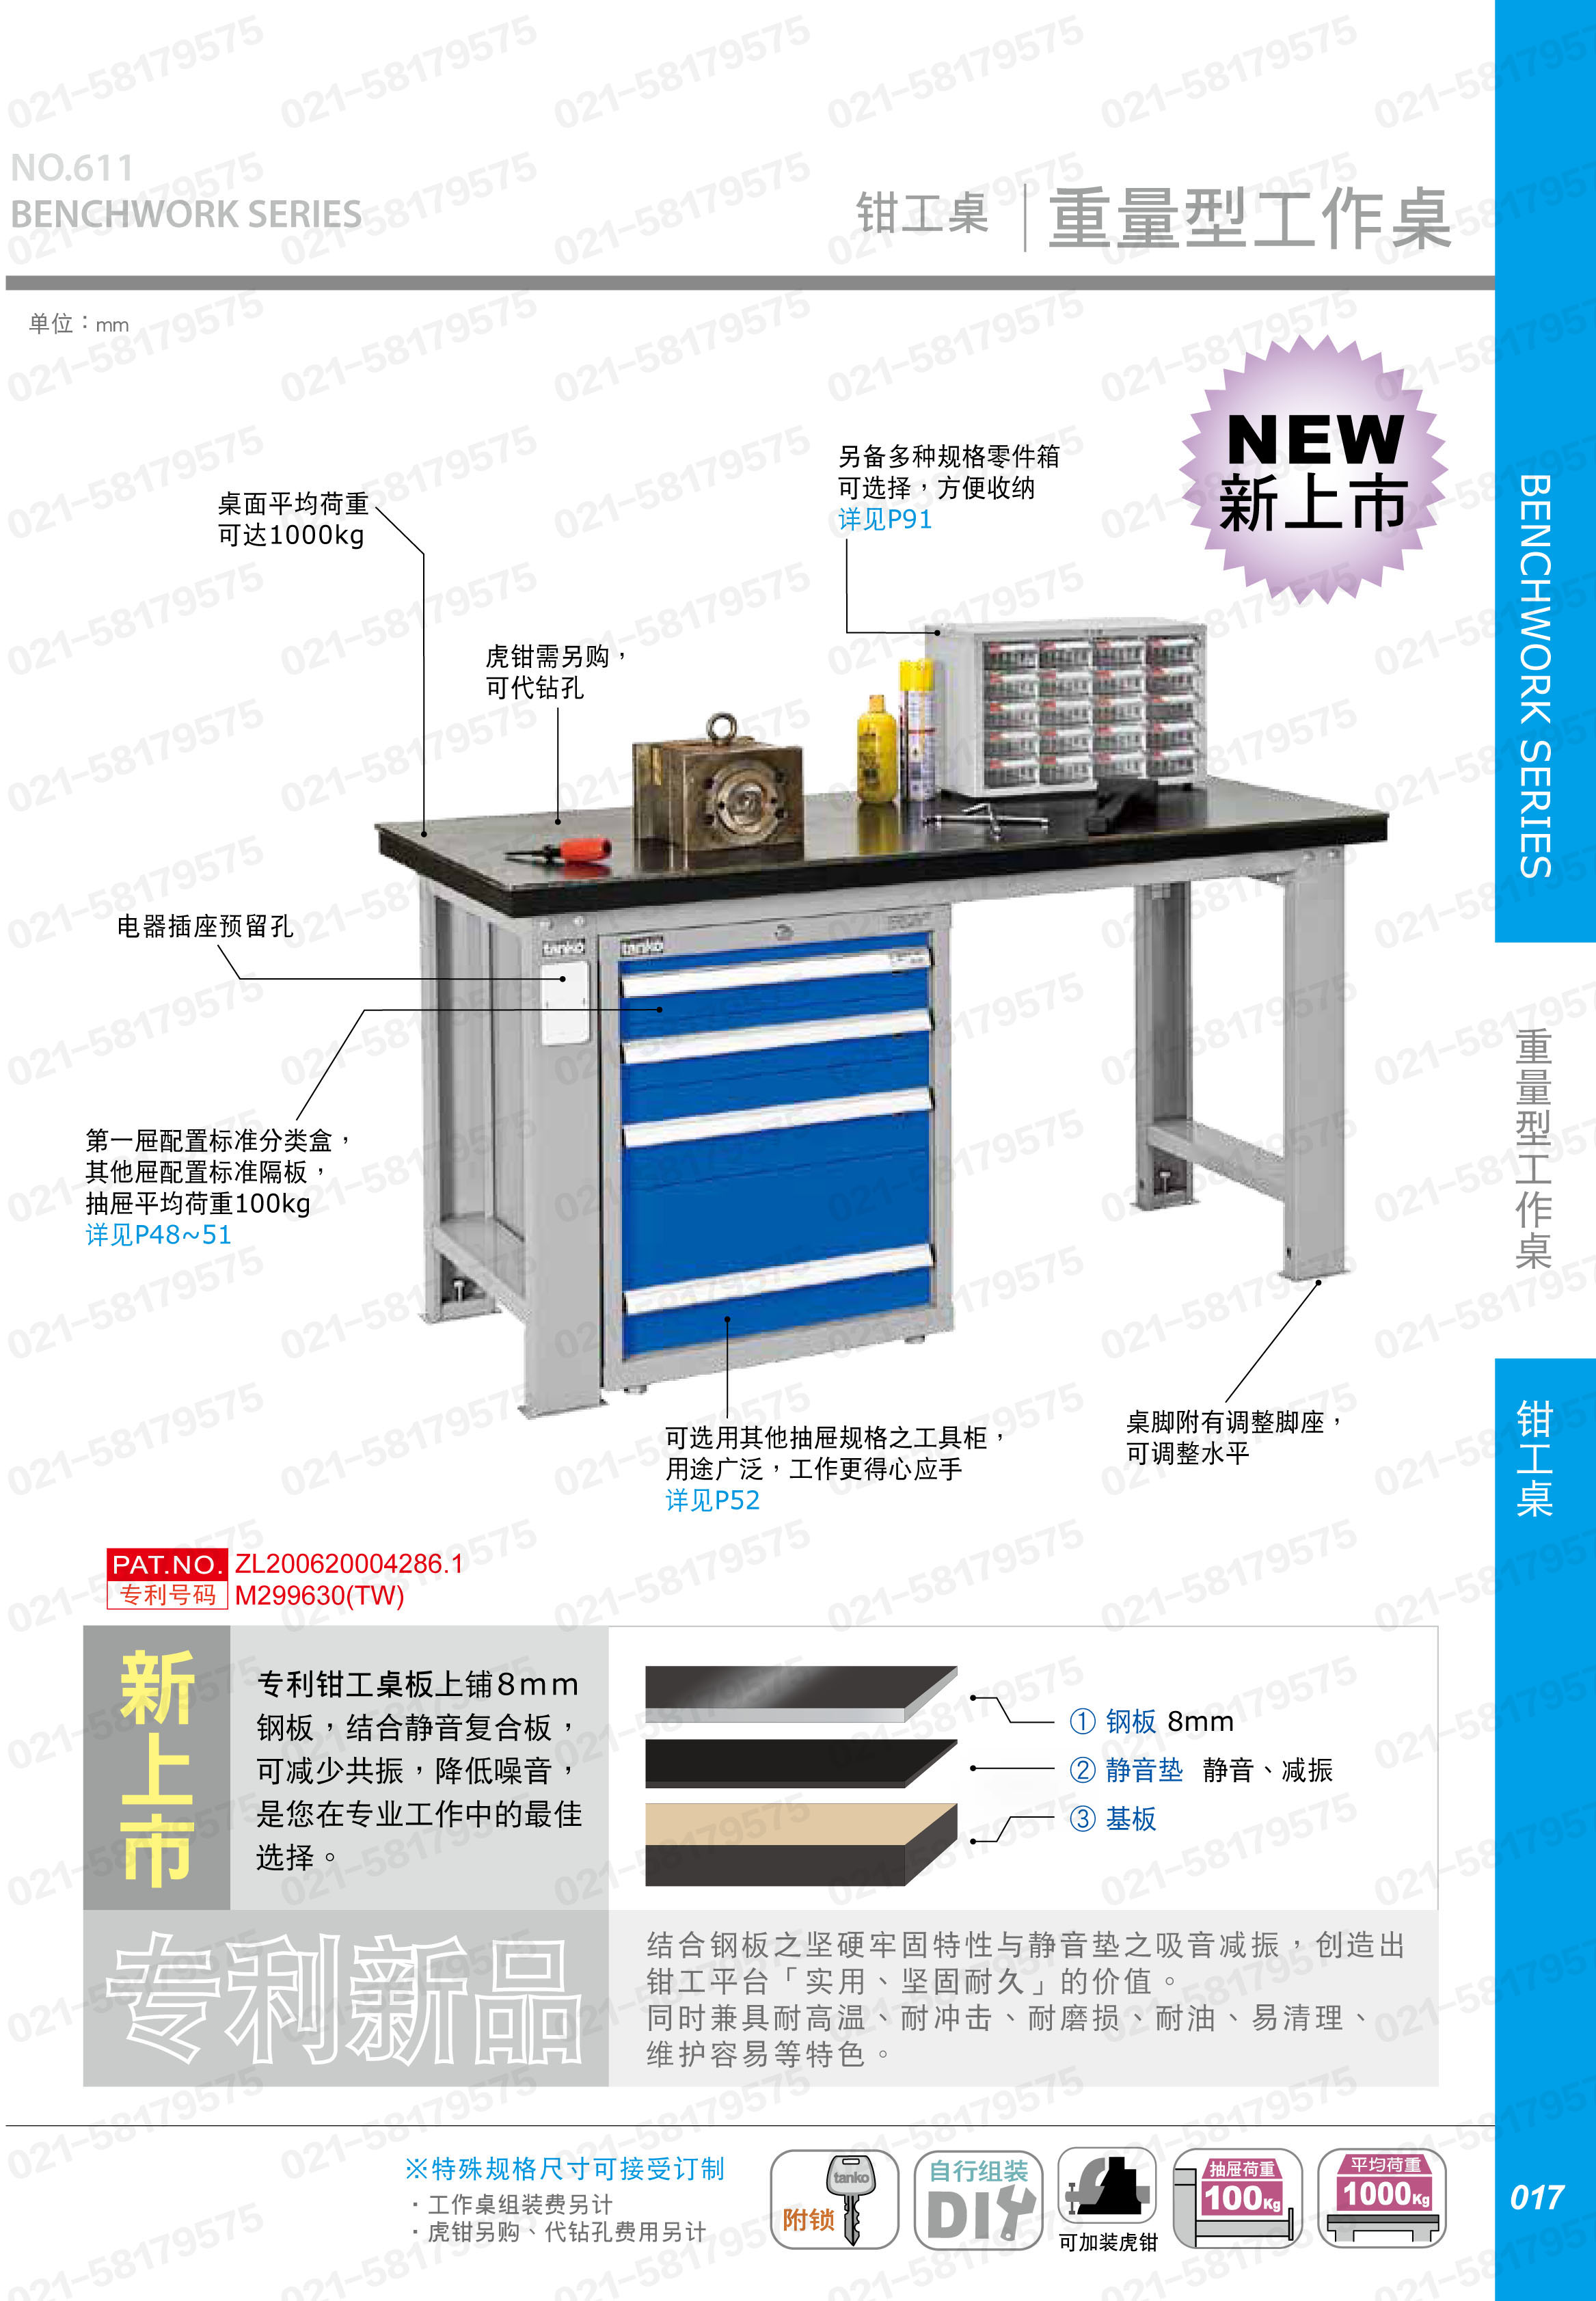 重型工作桌1500×750×800mm平均承重1吨耐磨桌板 横置3个抽屉,WAT-5203F,3M0879